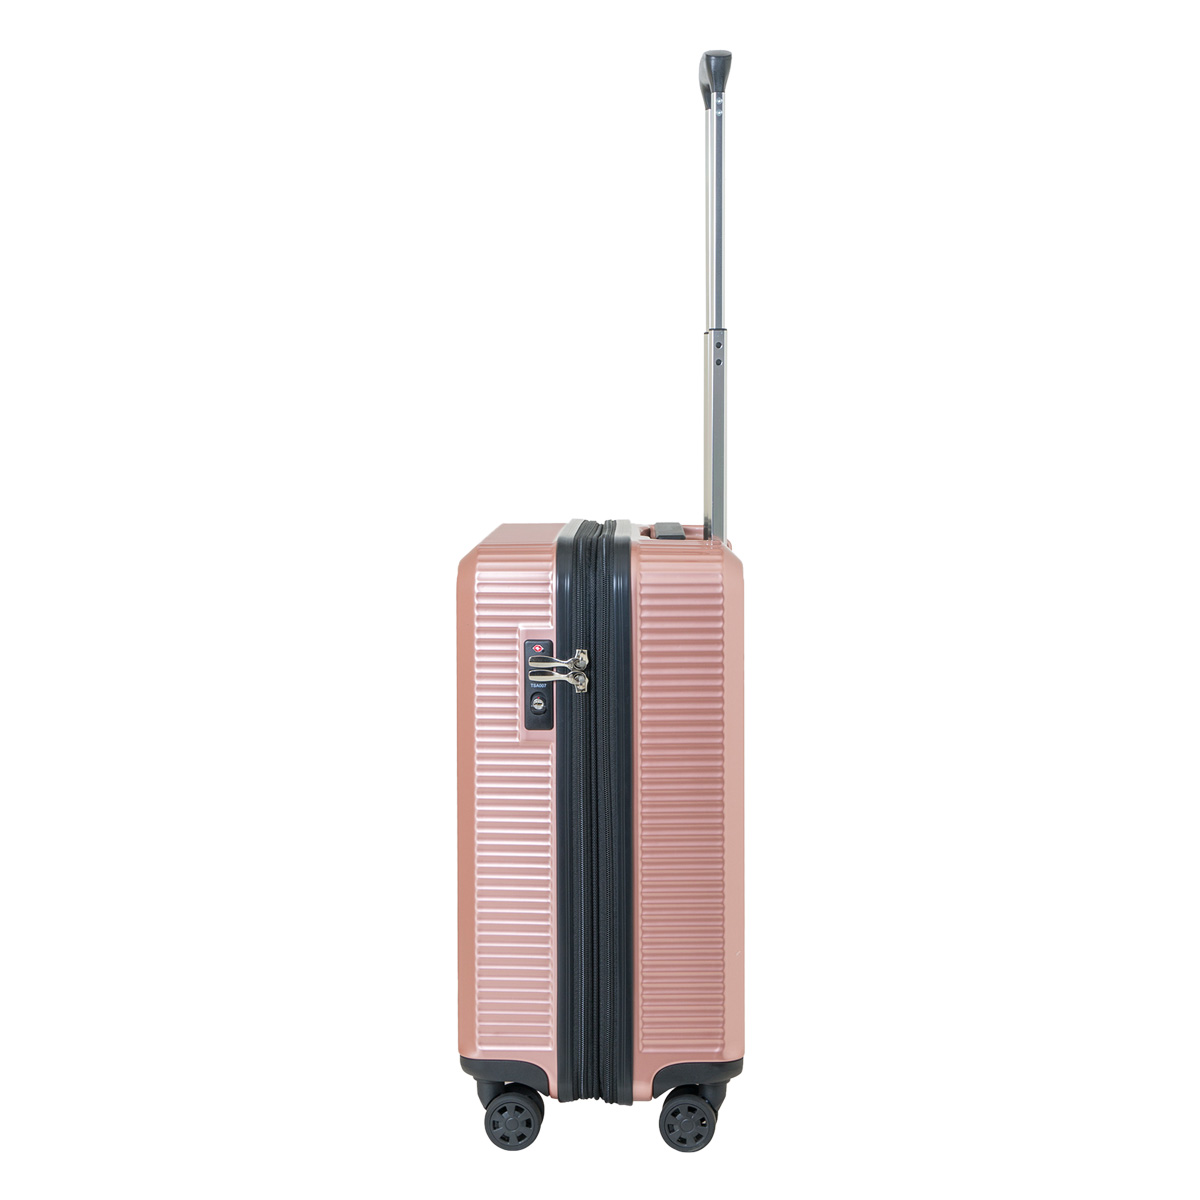 アウトドアプロダクツ スーツケース 45L 49.5cm 3.2kg OD-0808-50 OUTDOOR PRODUCTS 機内持ち込み  TSAロック搭載 キャリーバッグ キャリーケース スーツケース、キャリーバッグ